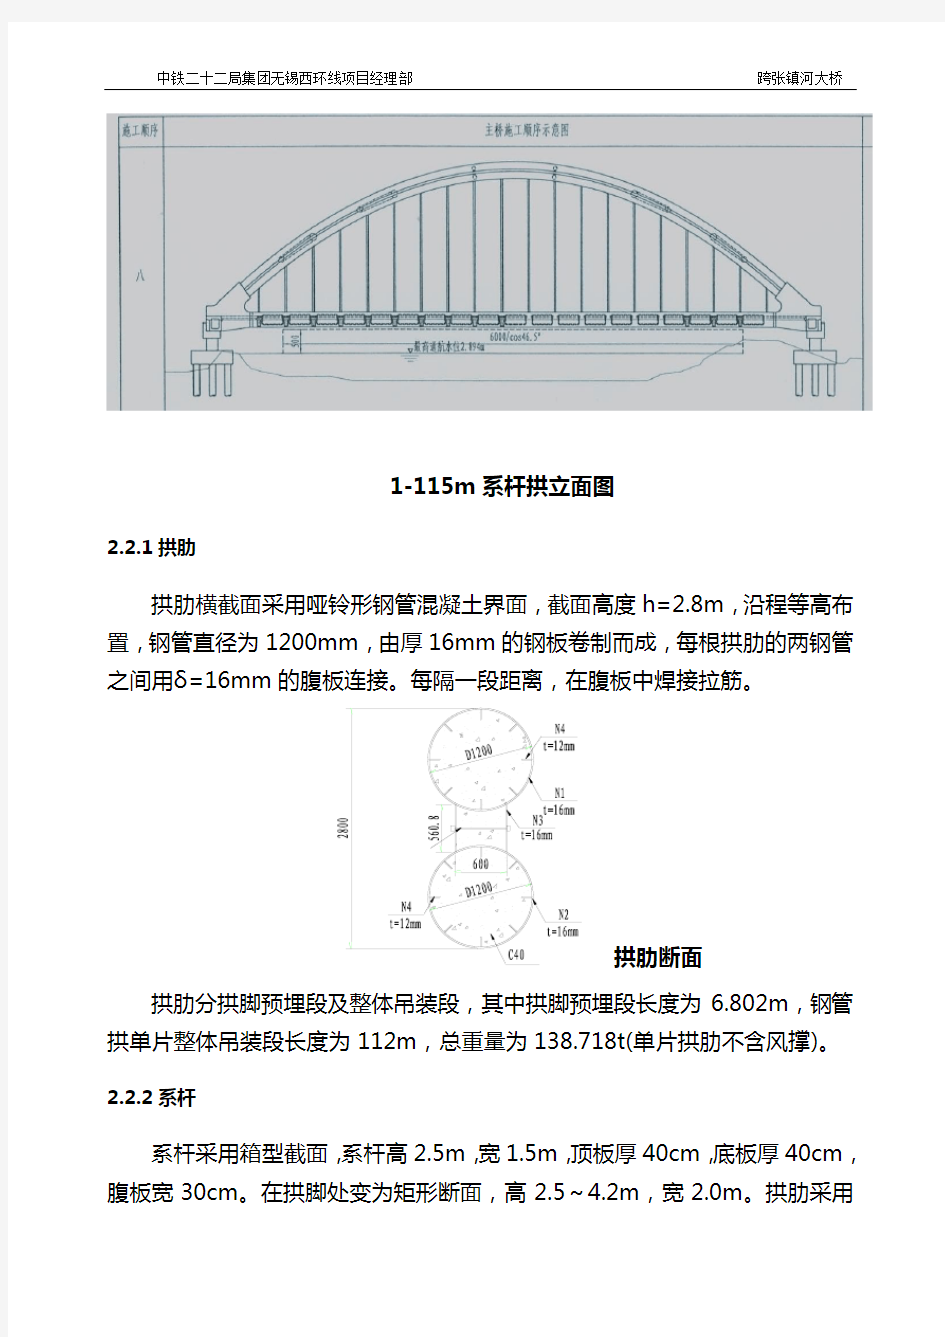 跨张镇河大桥系杆拱施工脚本